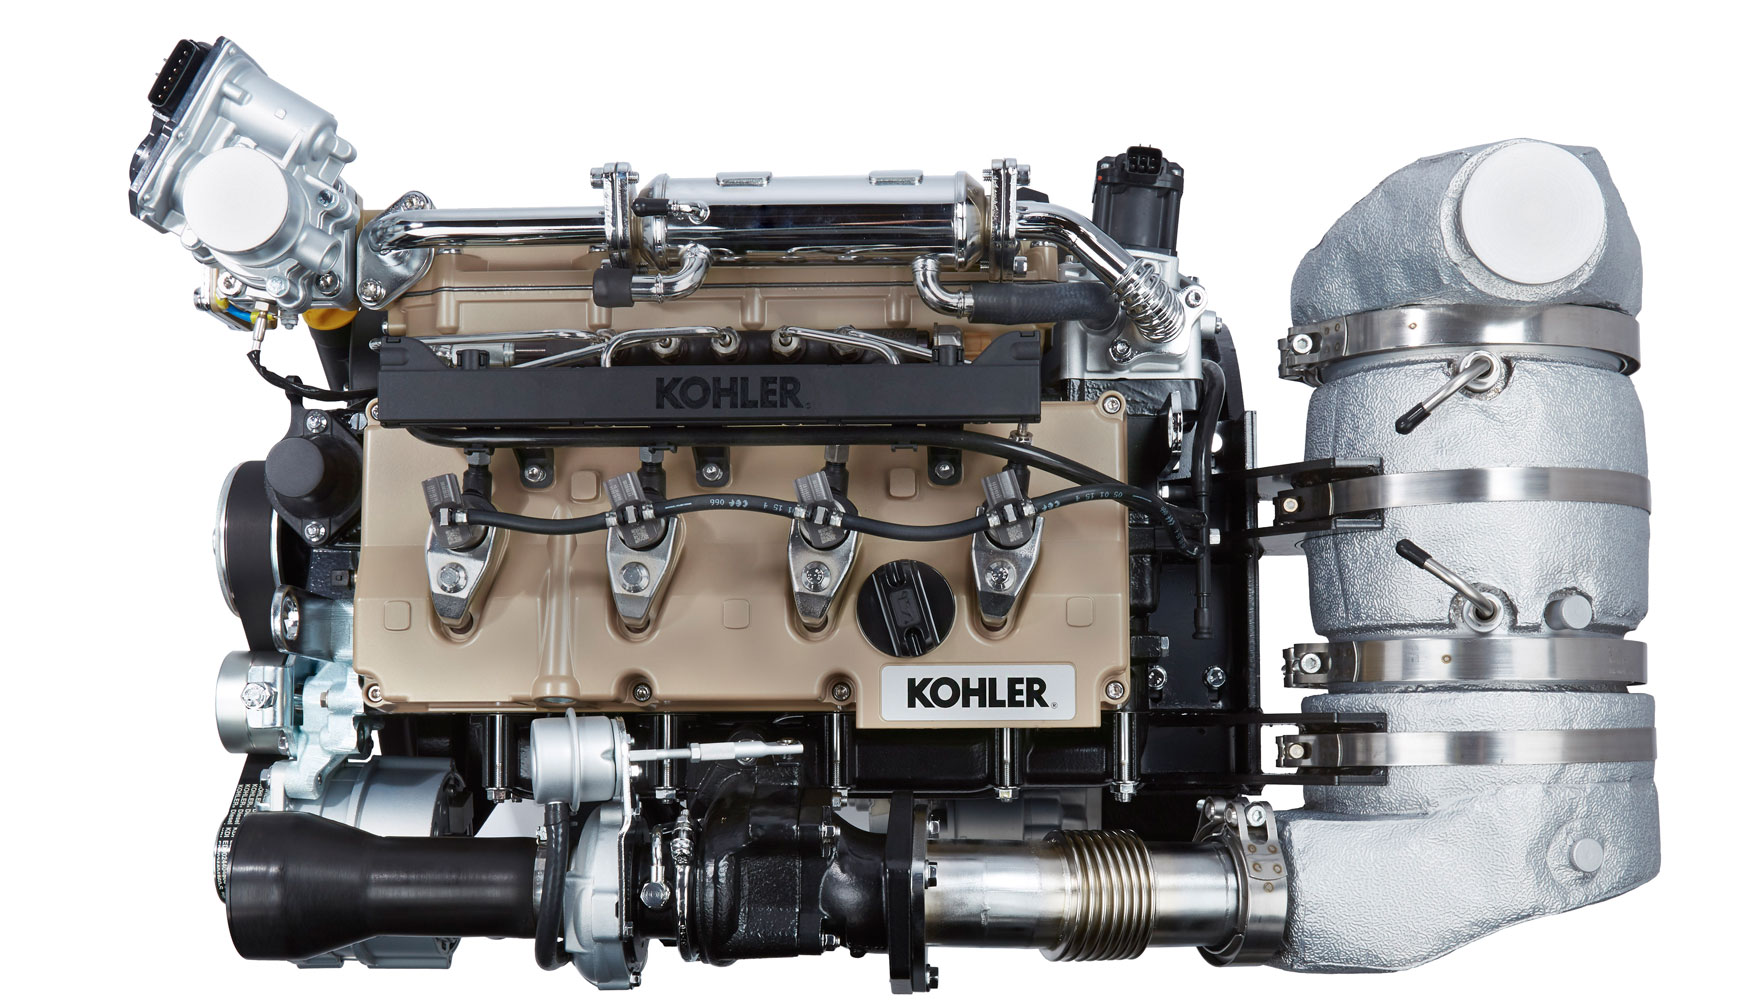 Motor KDI 2504TCR de Kohler